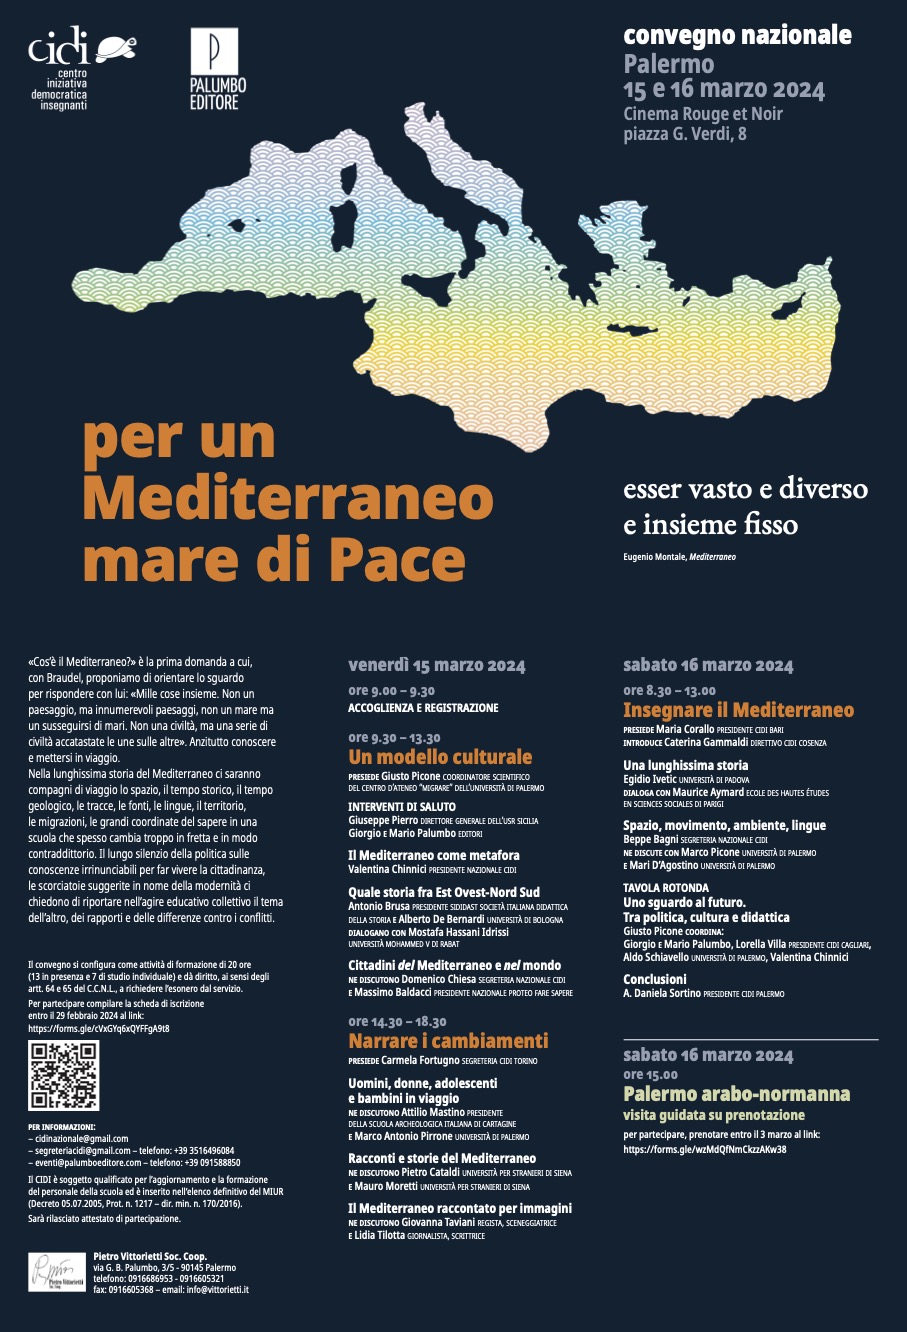 Per un Mediterraneo mare di pace, convegno nazionale del Cidi, Palermo 15 e 16 marzo